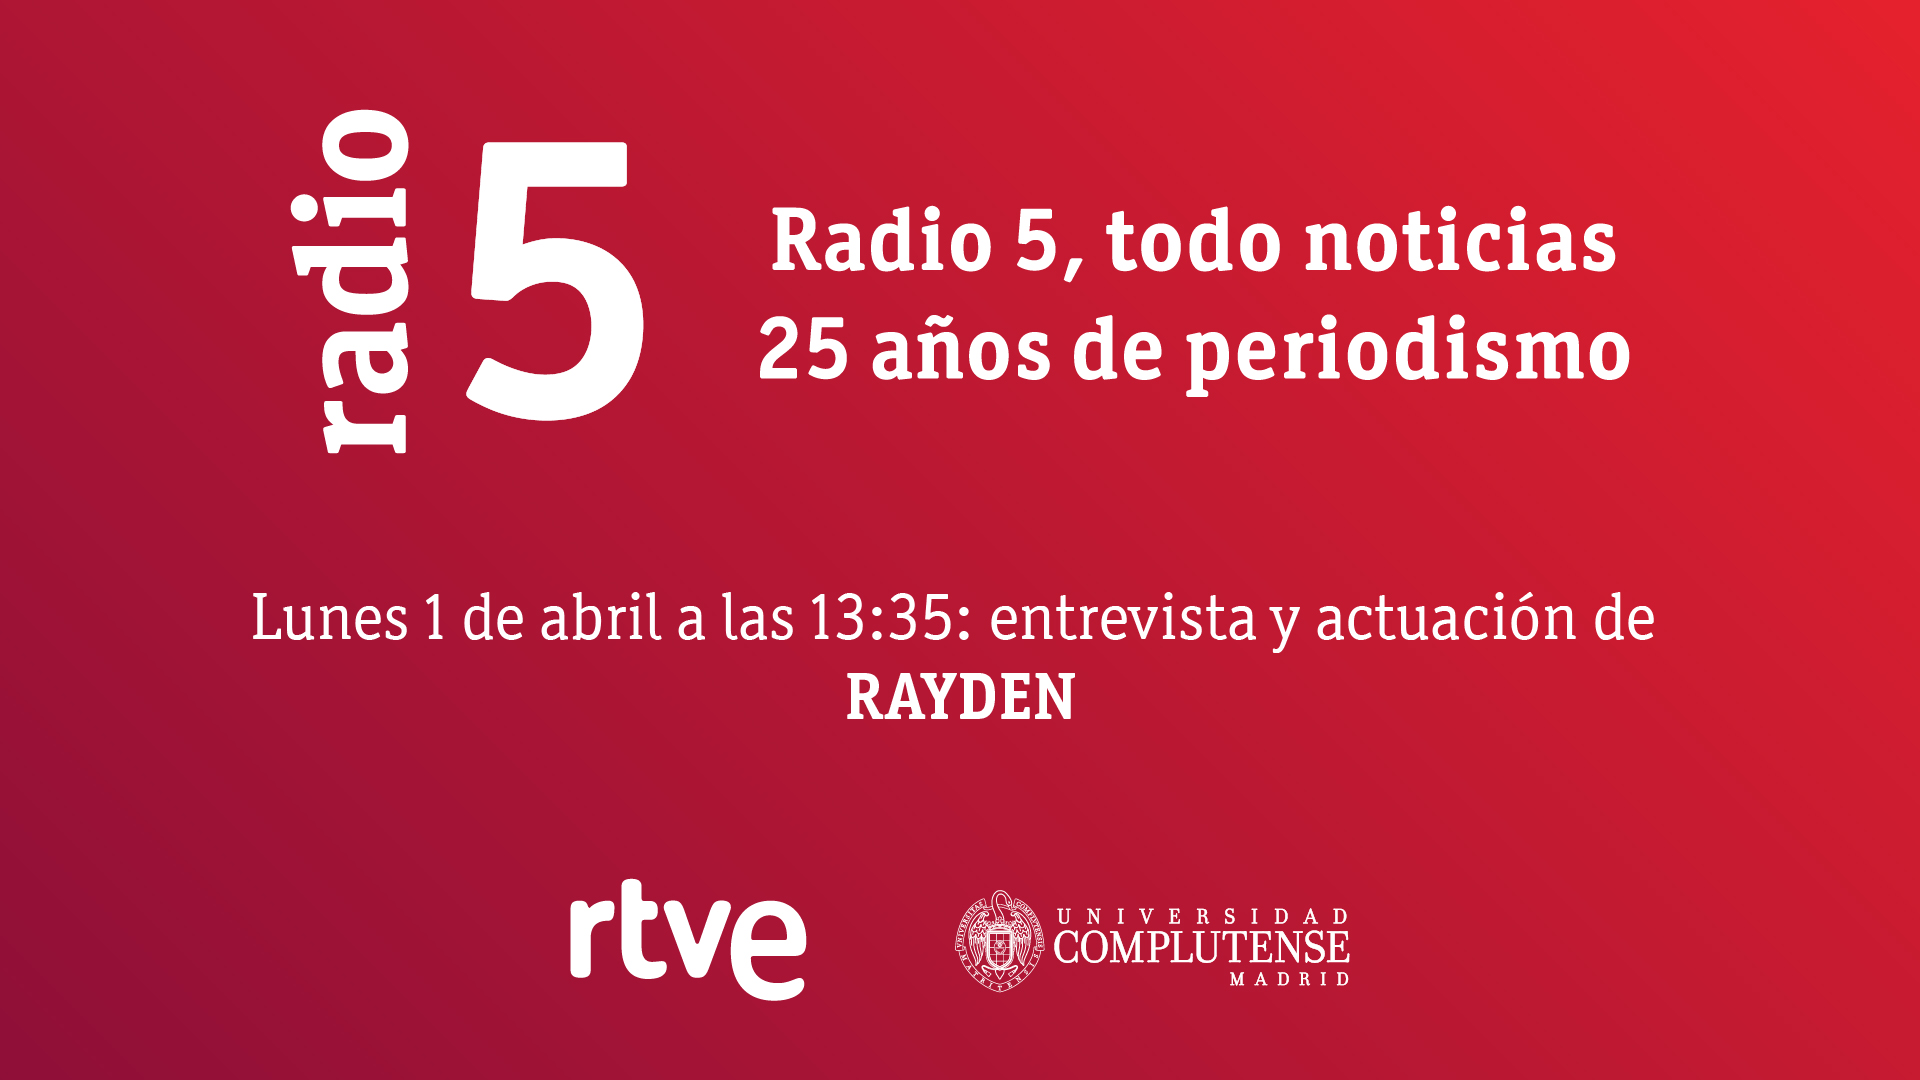 Radio 5 todo noticias celebra su 25 aniversario en la Facultad - 2